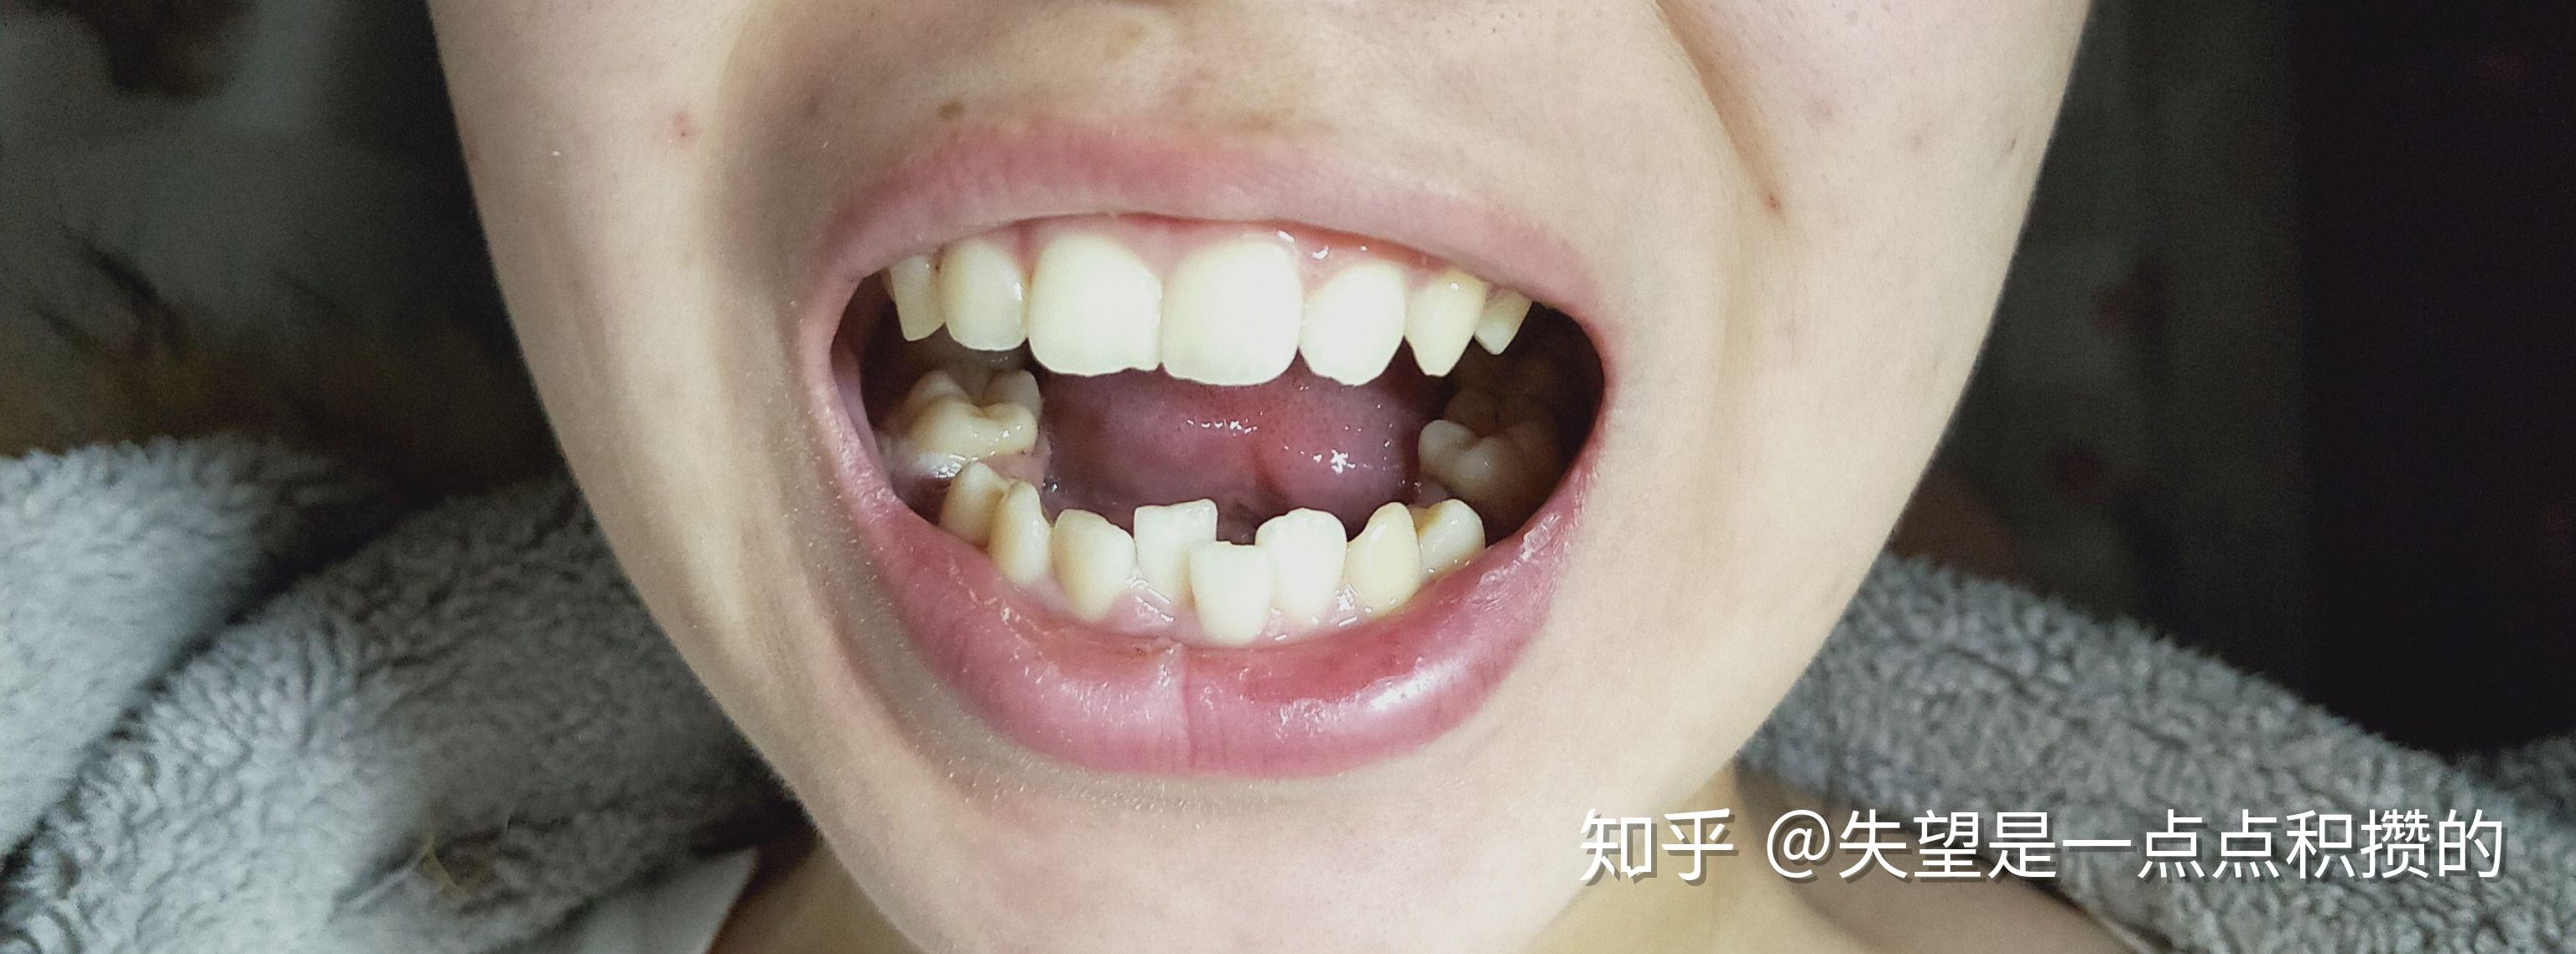 桂林正畸 | 龅牙 牙齿拥挤 - 知乎